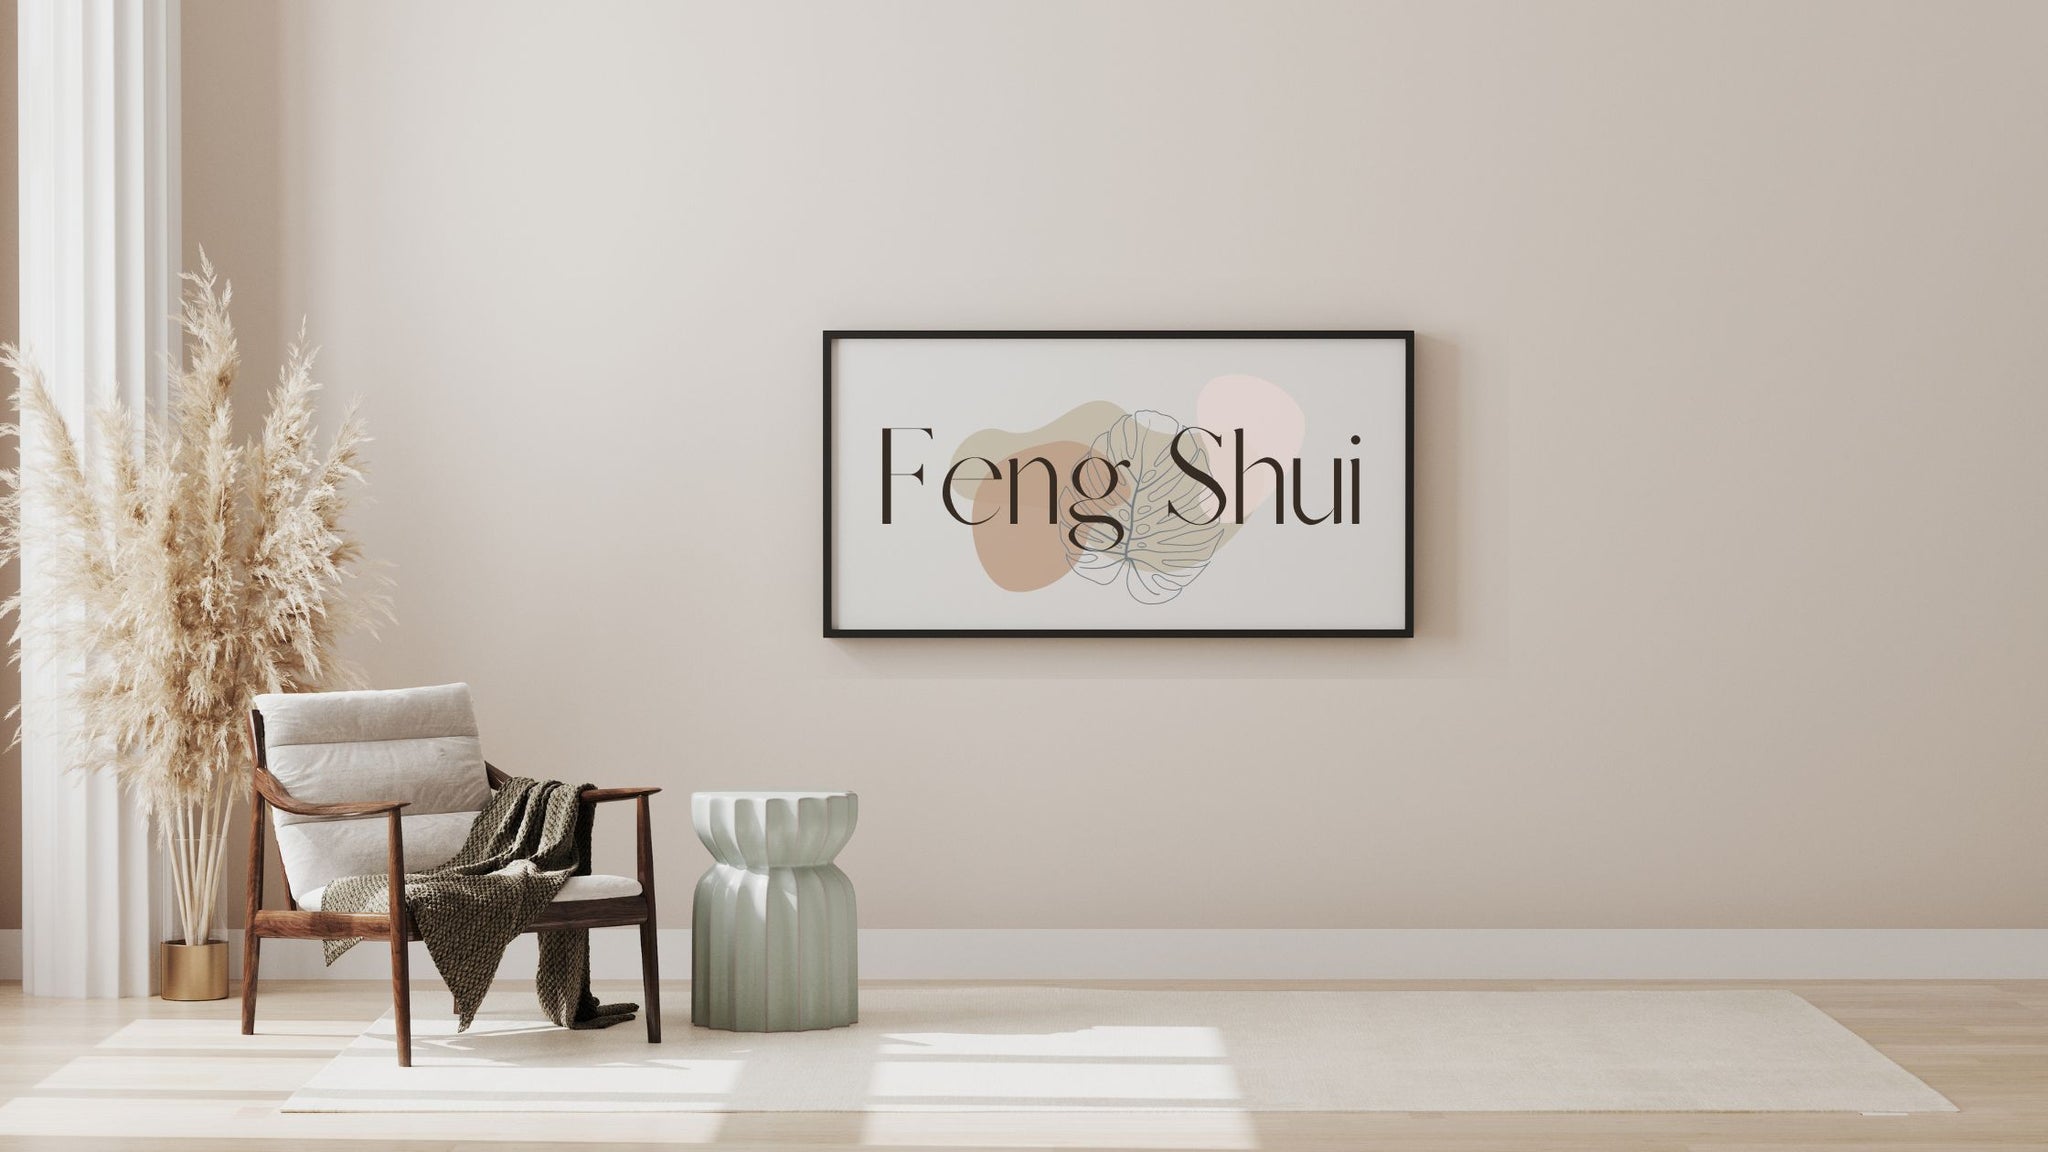 Feng shui : règles et conseils pour la maison et la déco